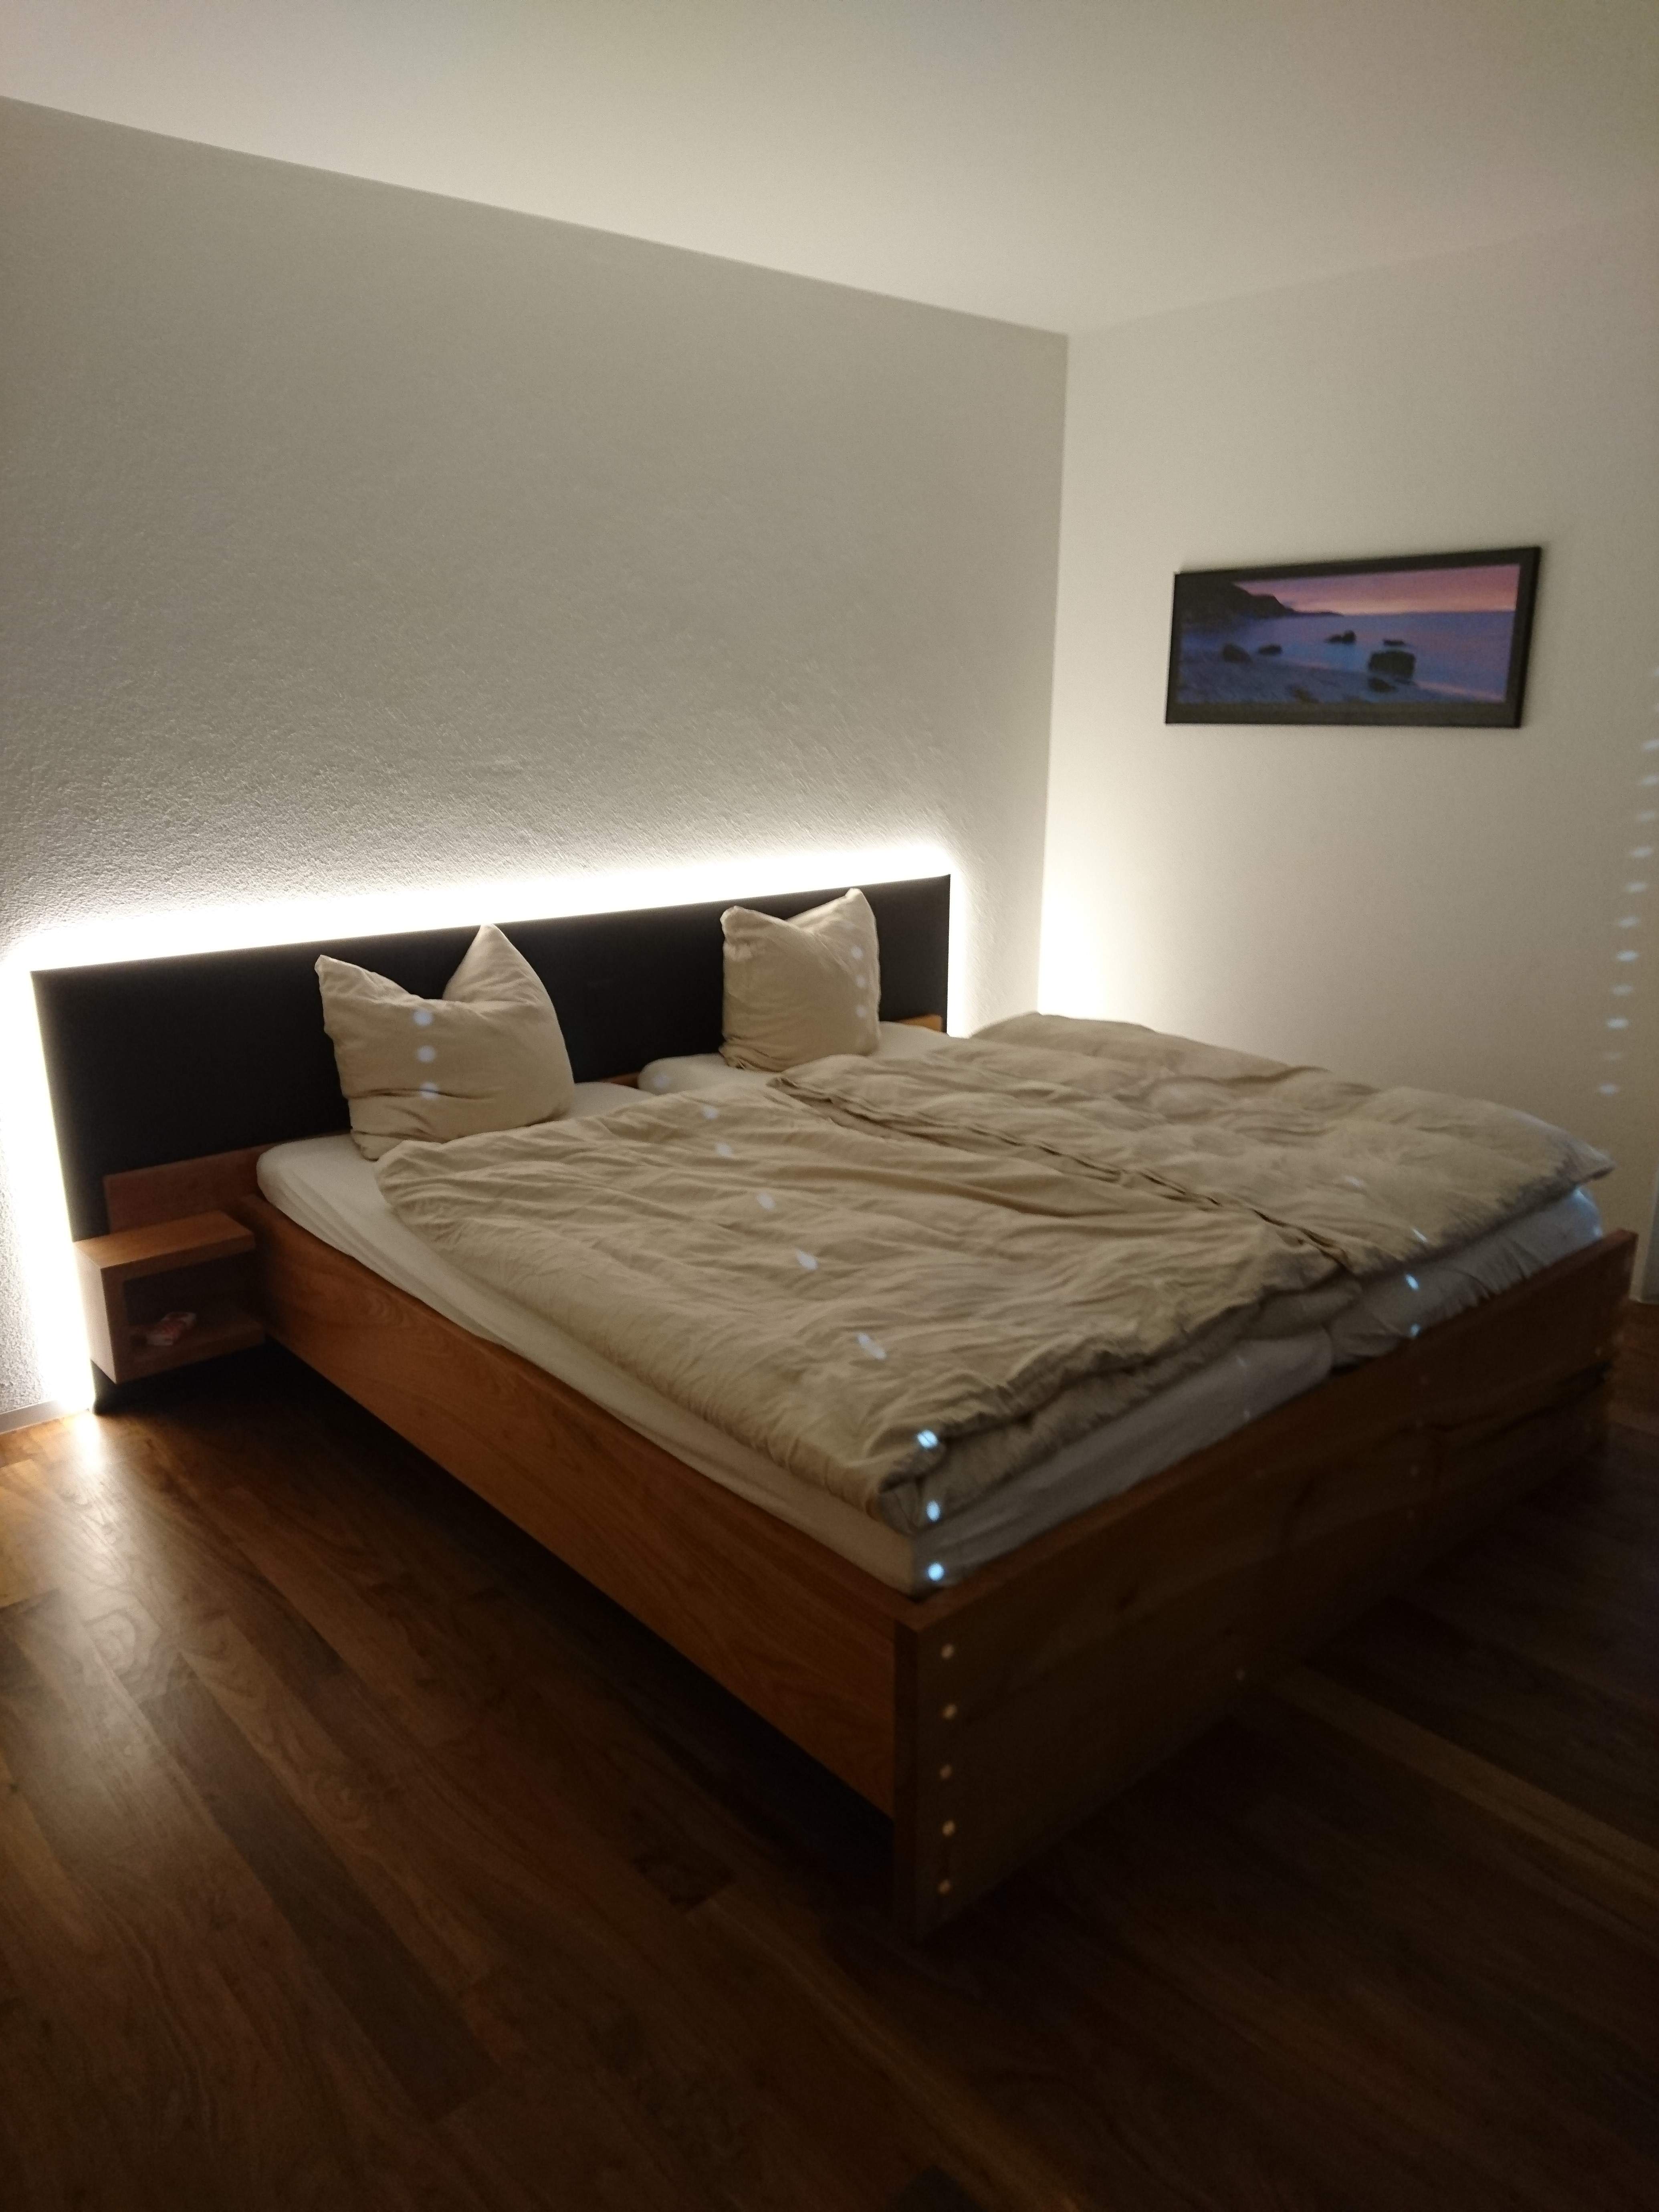 Bett in Kirschbaum massiv, geölt mit MDF schwarz und integrierter LED-Beleuchtung